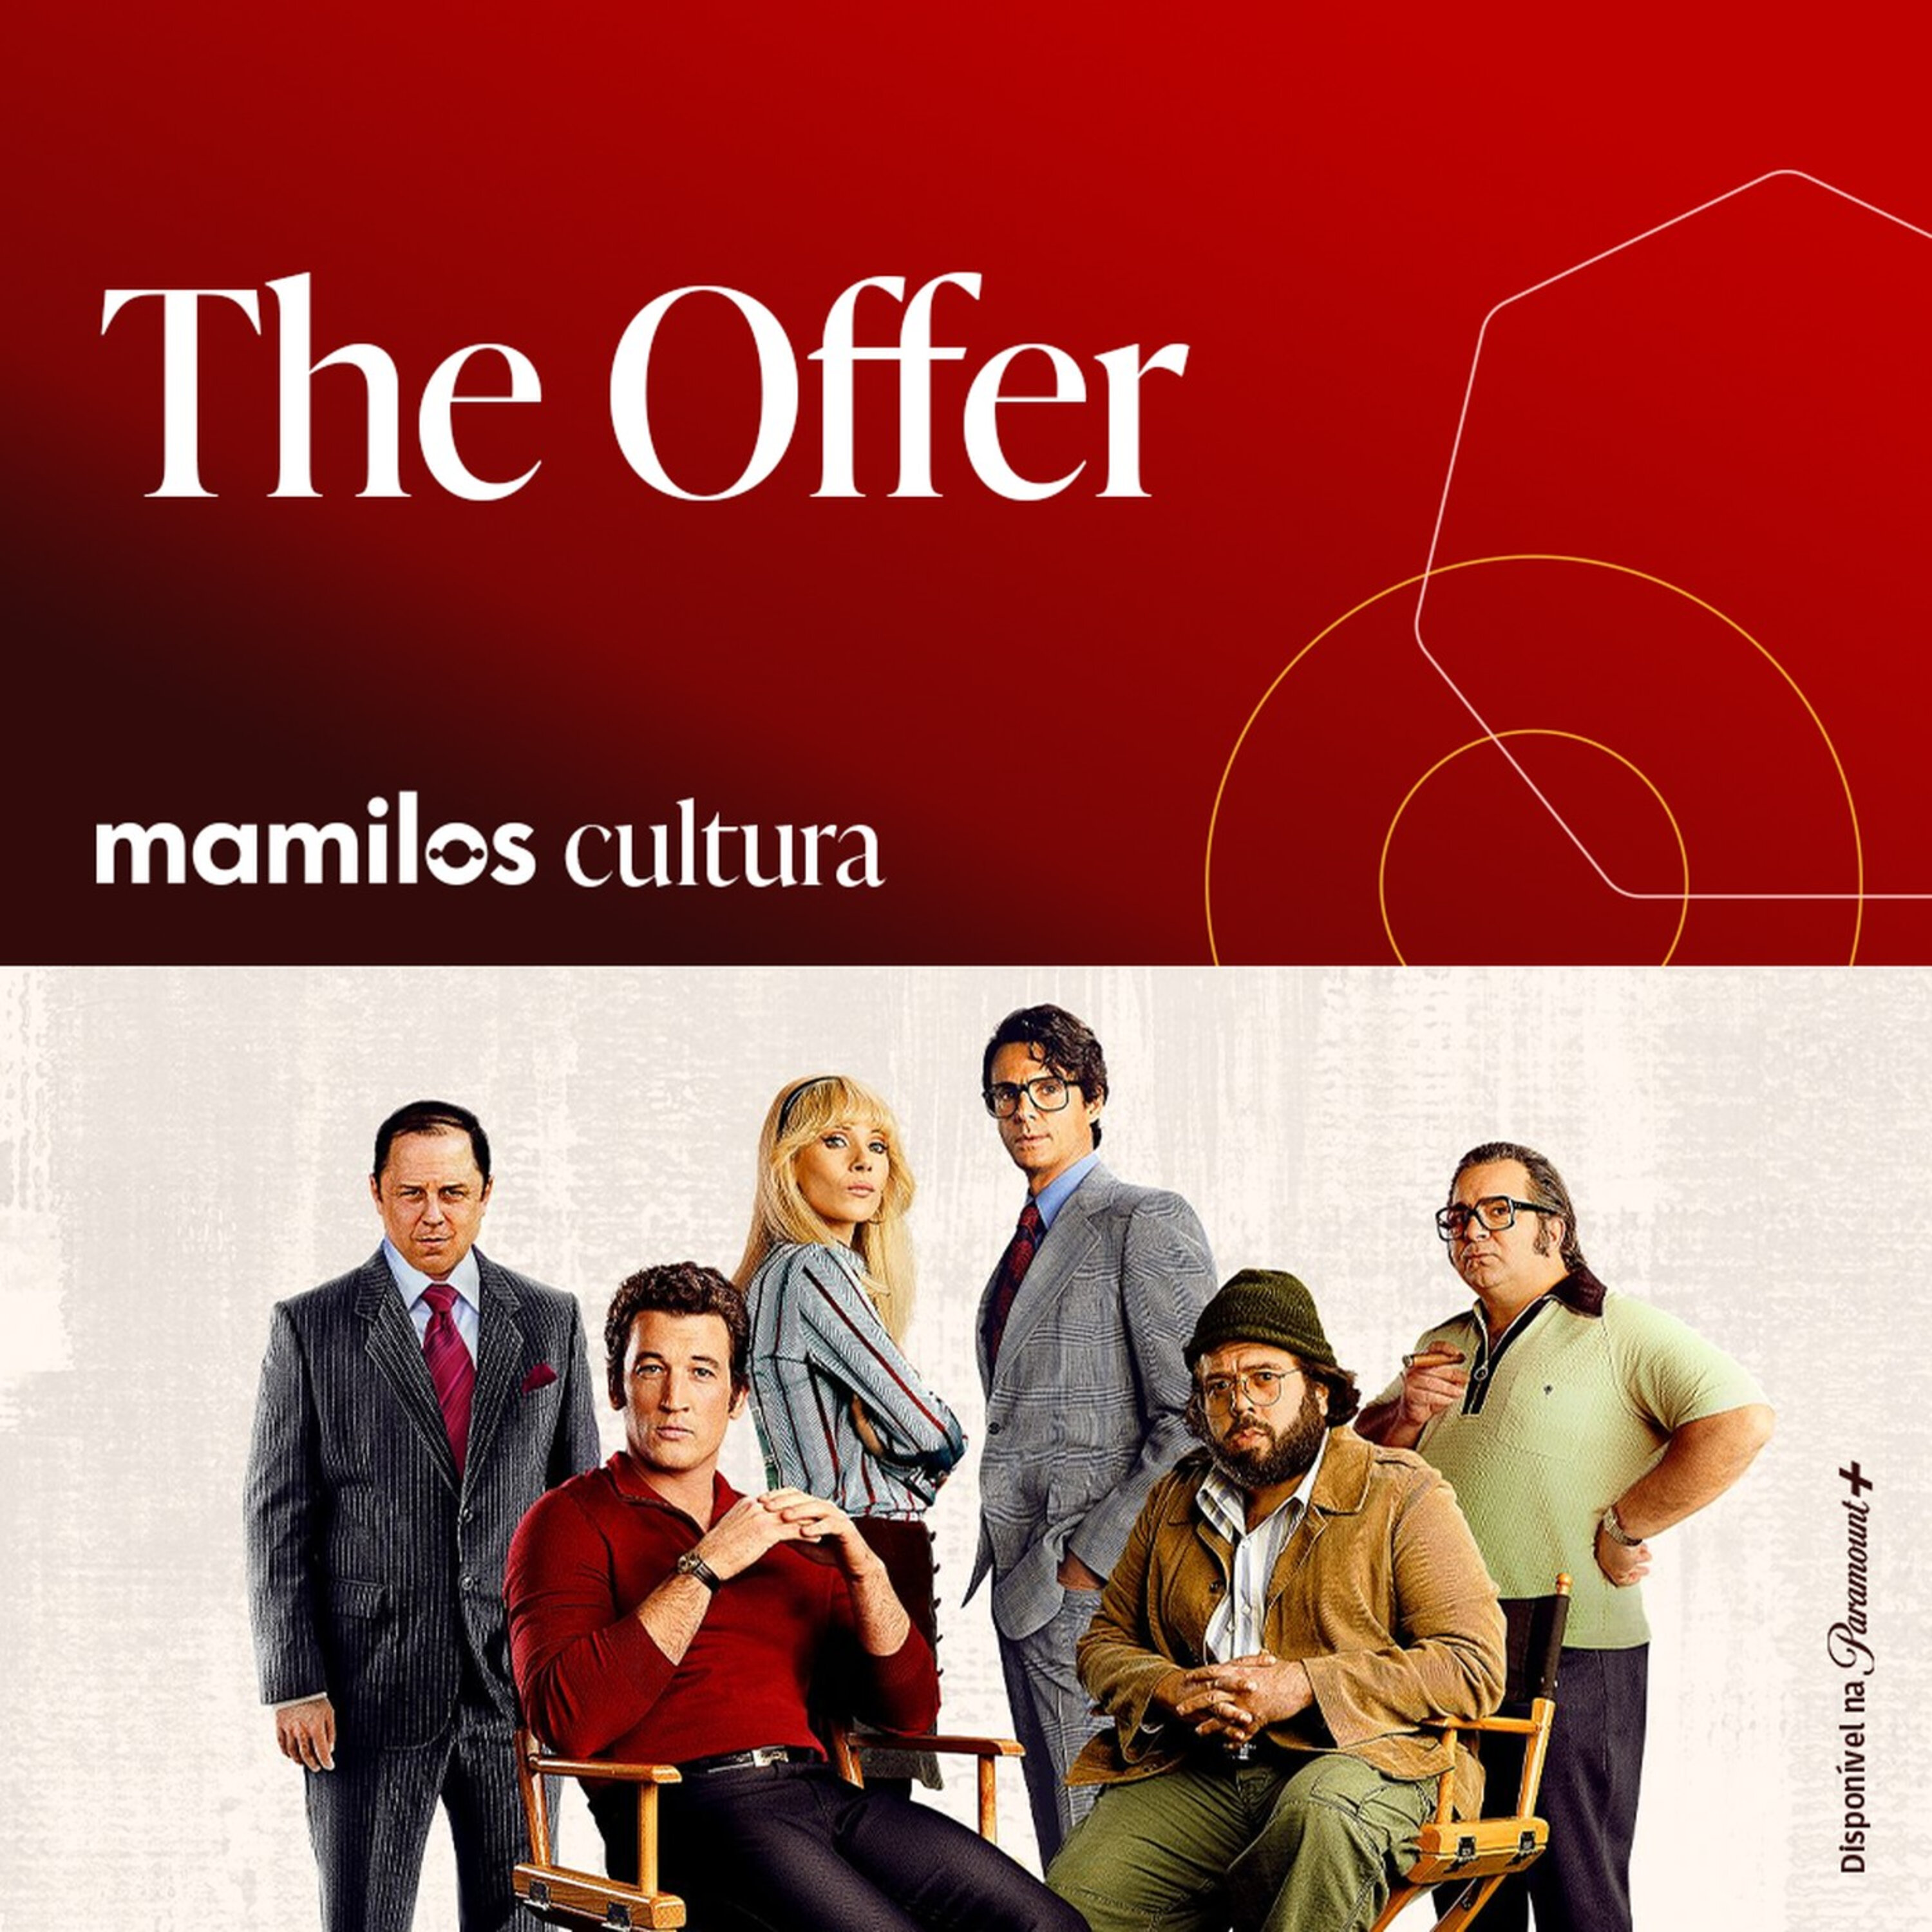 Mamilos Cultura 69: Série “The Offer” - a poderosa equipe